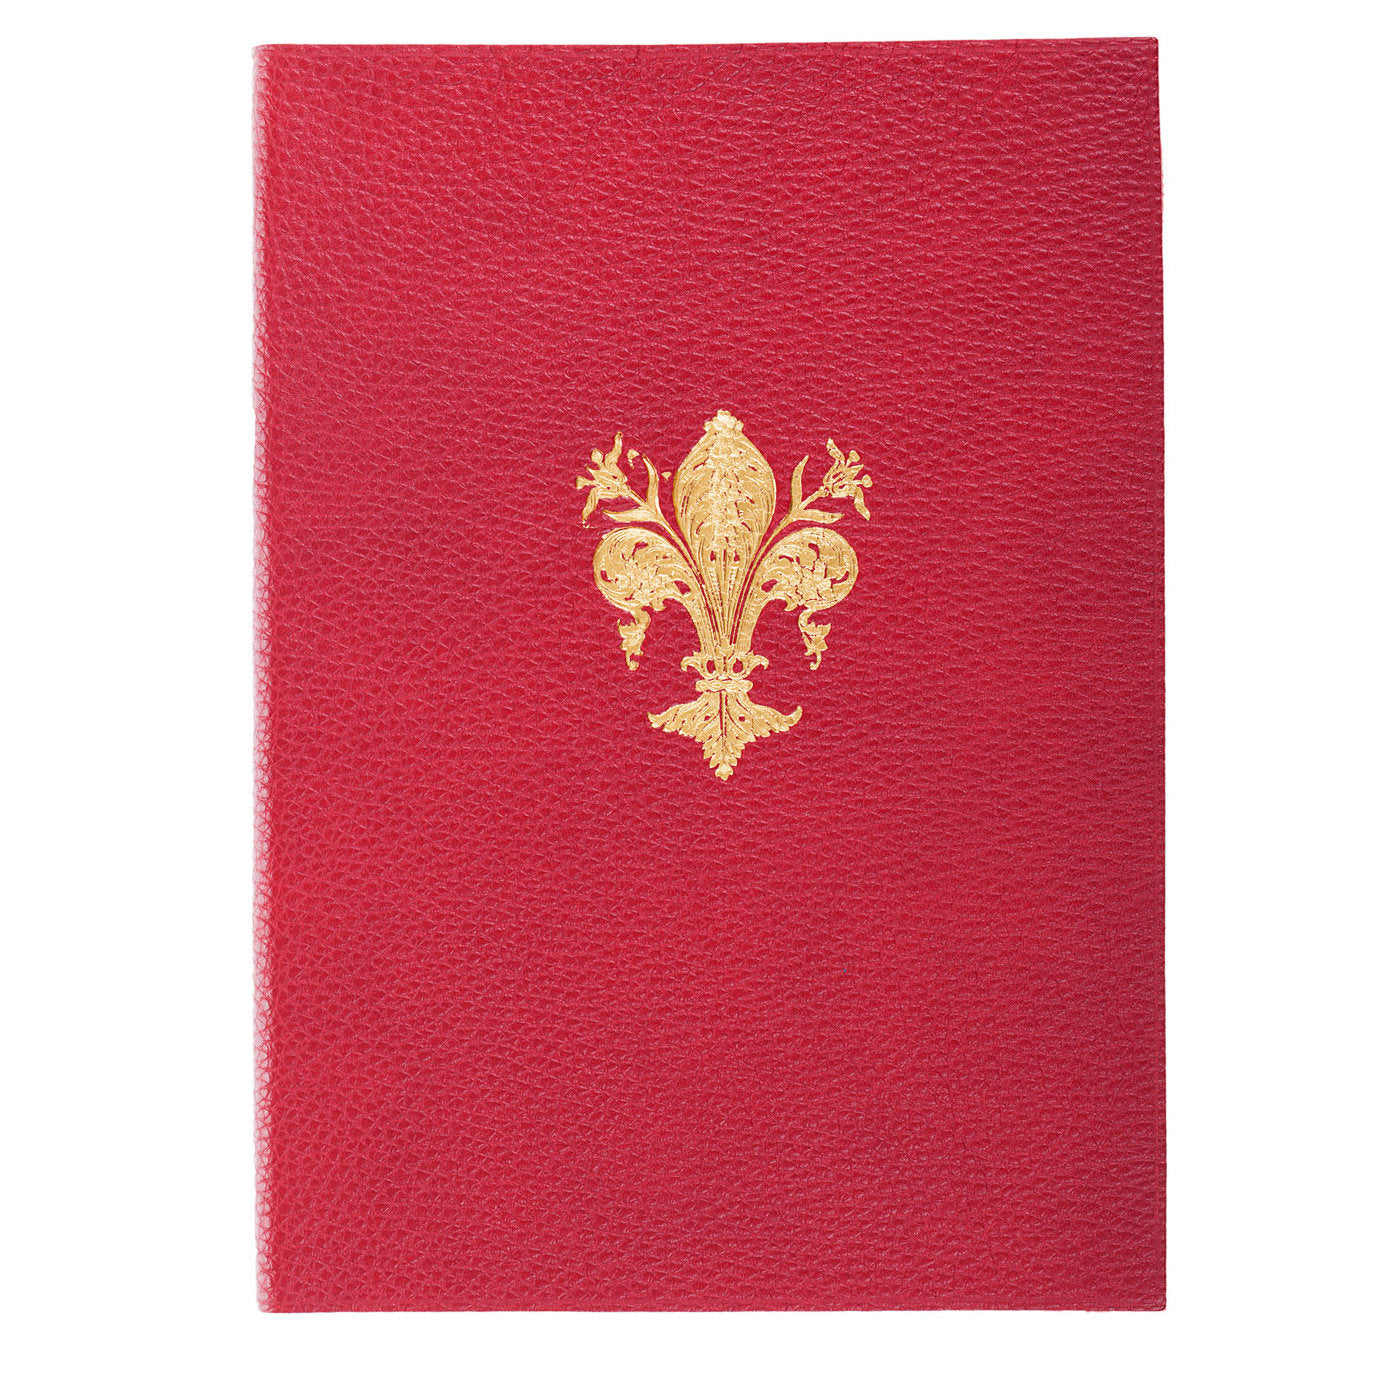 Gold Lily Cuaderno de cuero rojo - Vista alternativa 2